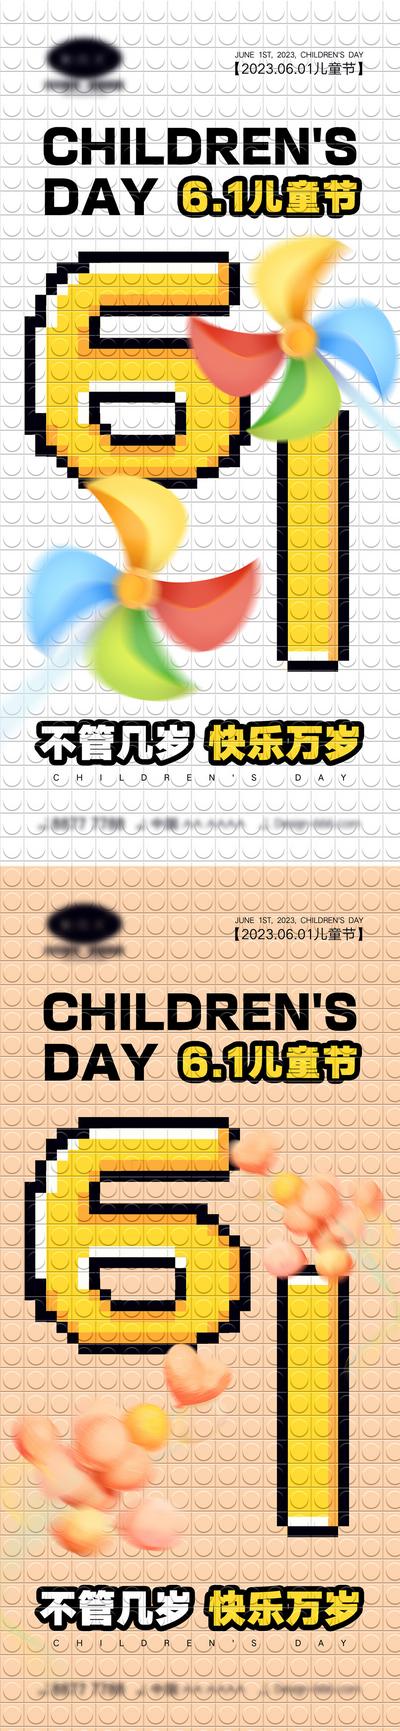 南门网 海报 系列 公立节日 61儿童节 快乐六一 童真 六一 棒棒糖 孩子 木马 风筝 气球 积木